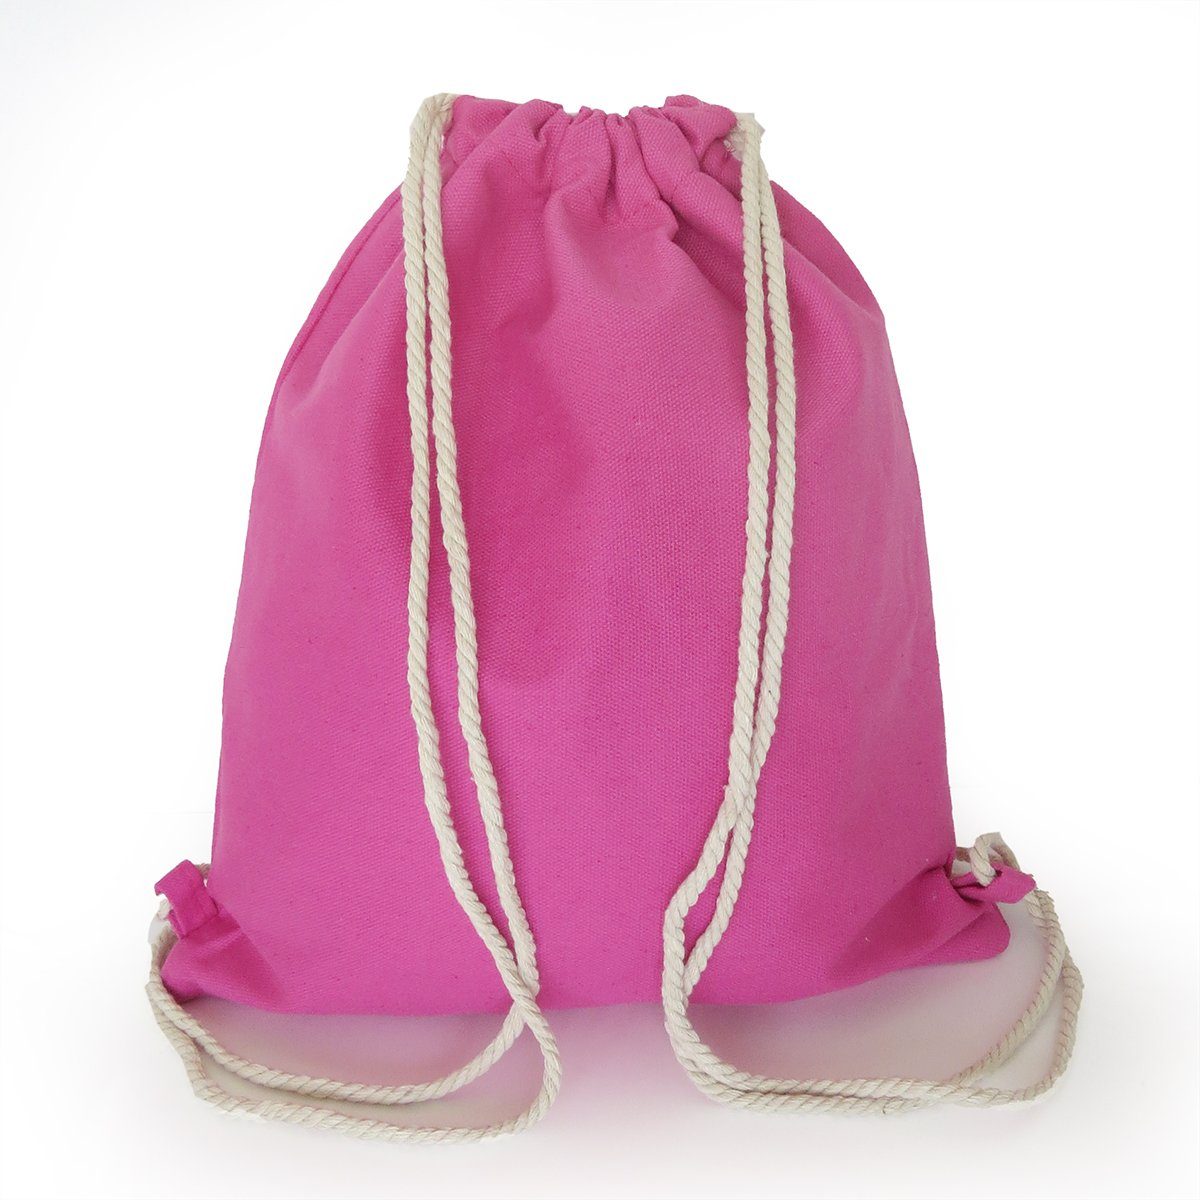 unifarben Sonia Trend, abweichen Turnbeutel können pink Seilkordel Gymbag Farben Baumwolle Originelli Umhängetasche